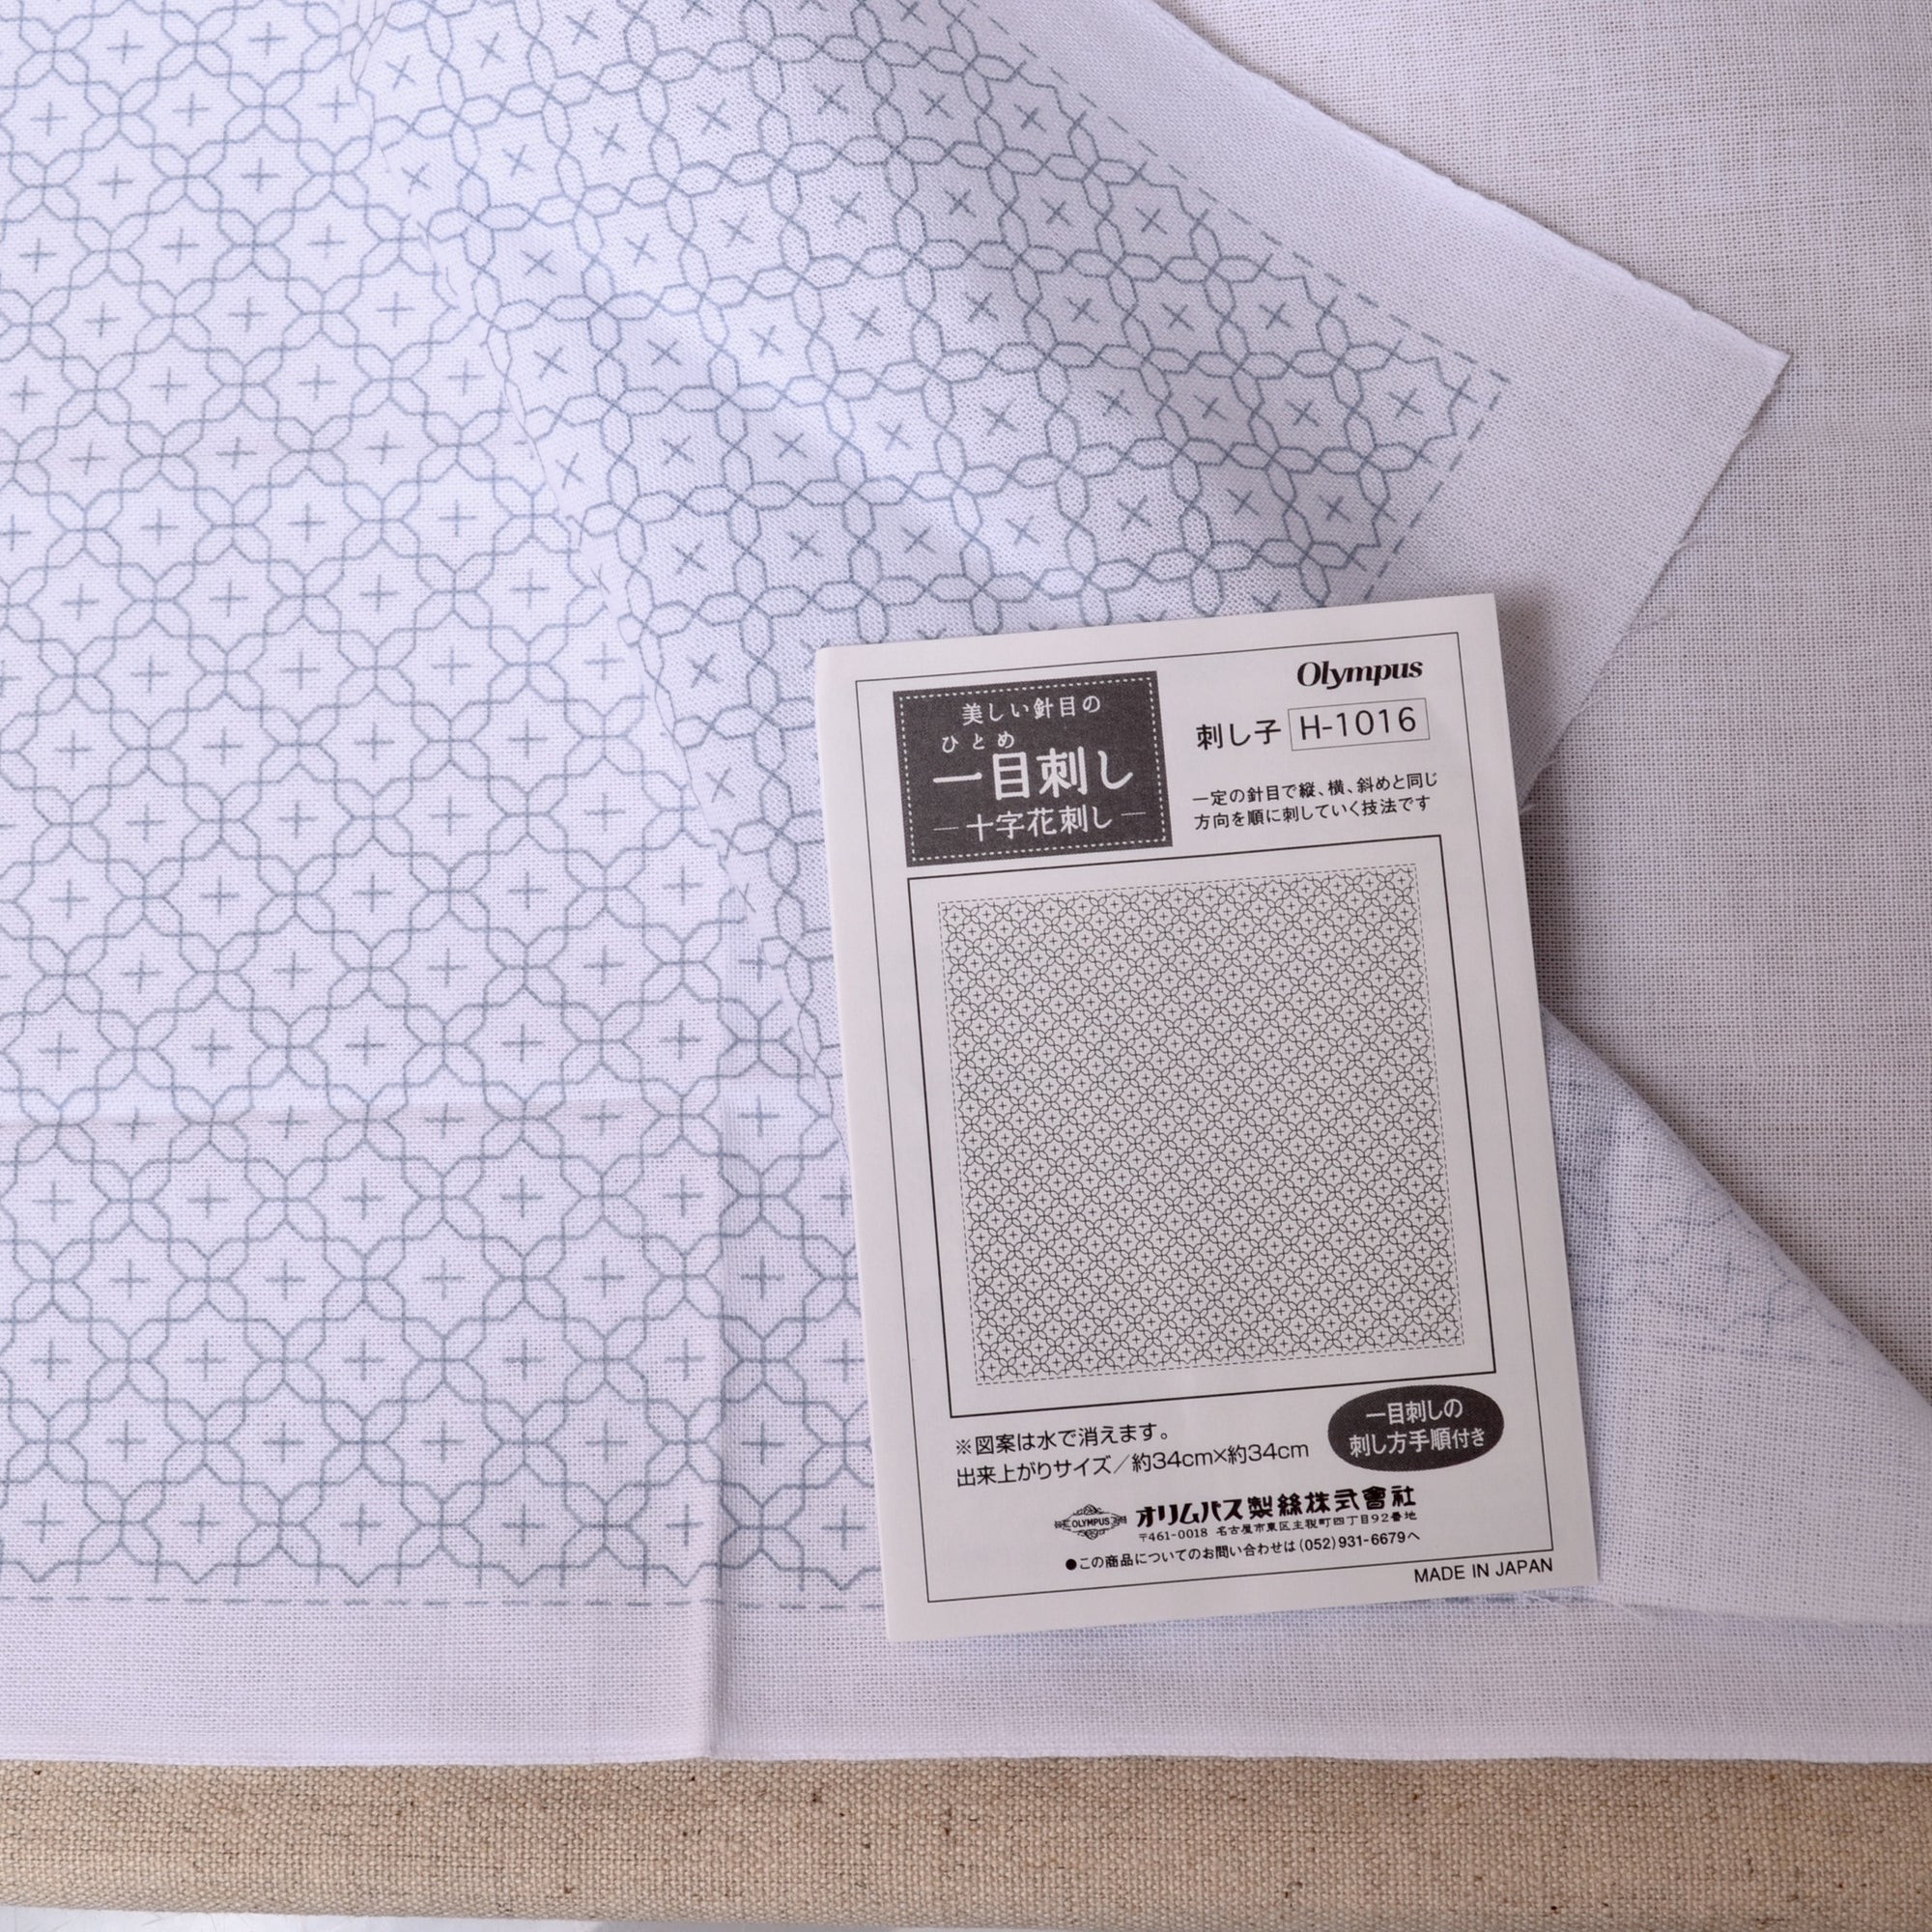 Hitomezashi sashiko preprinted fabric ready to stitch